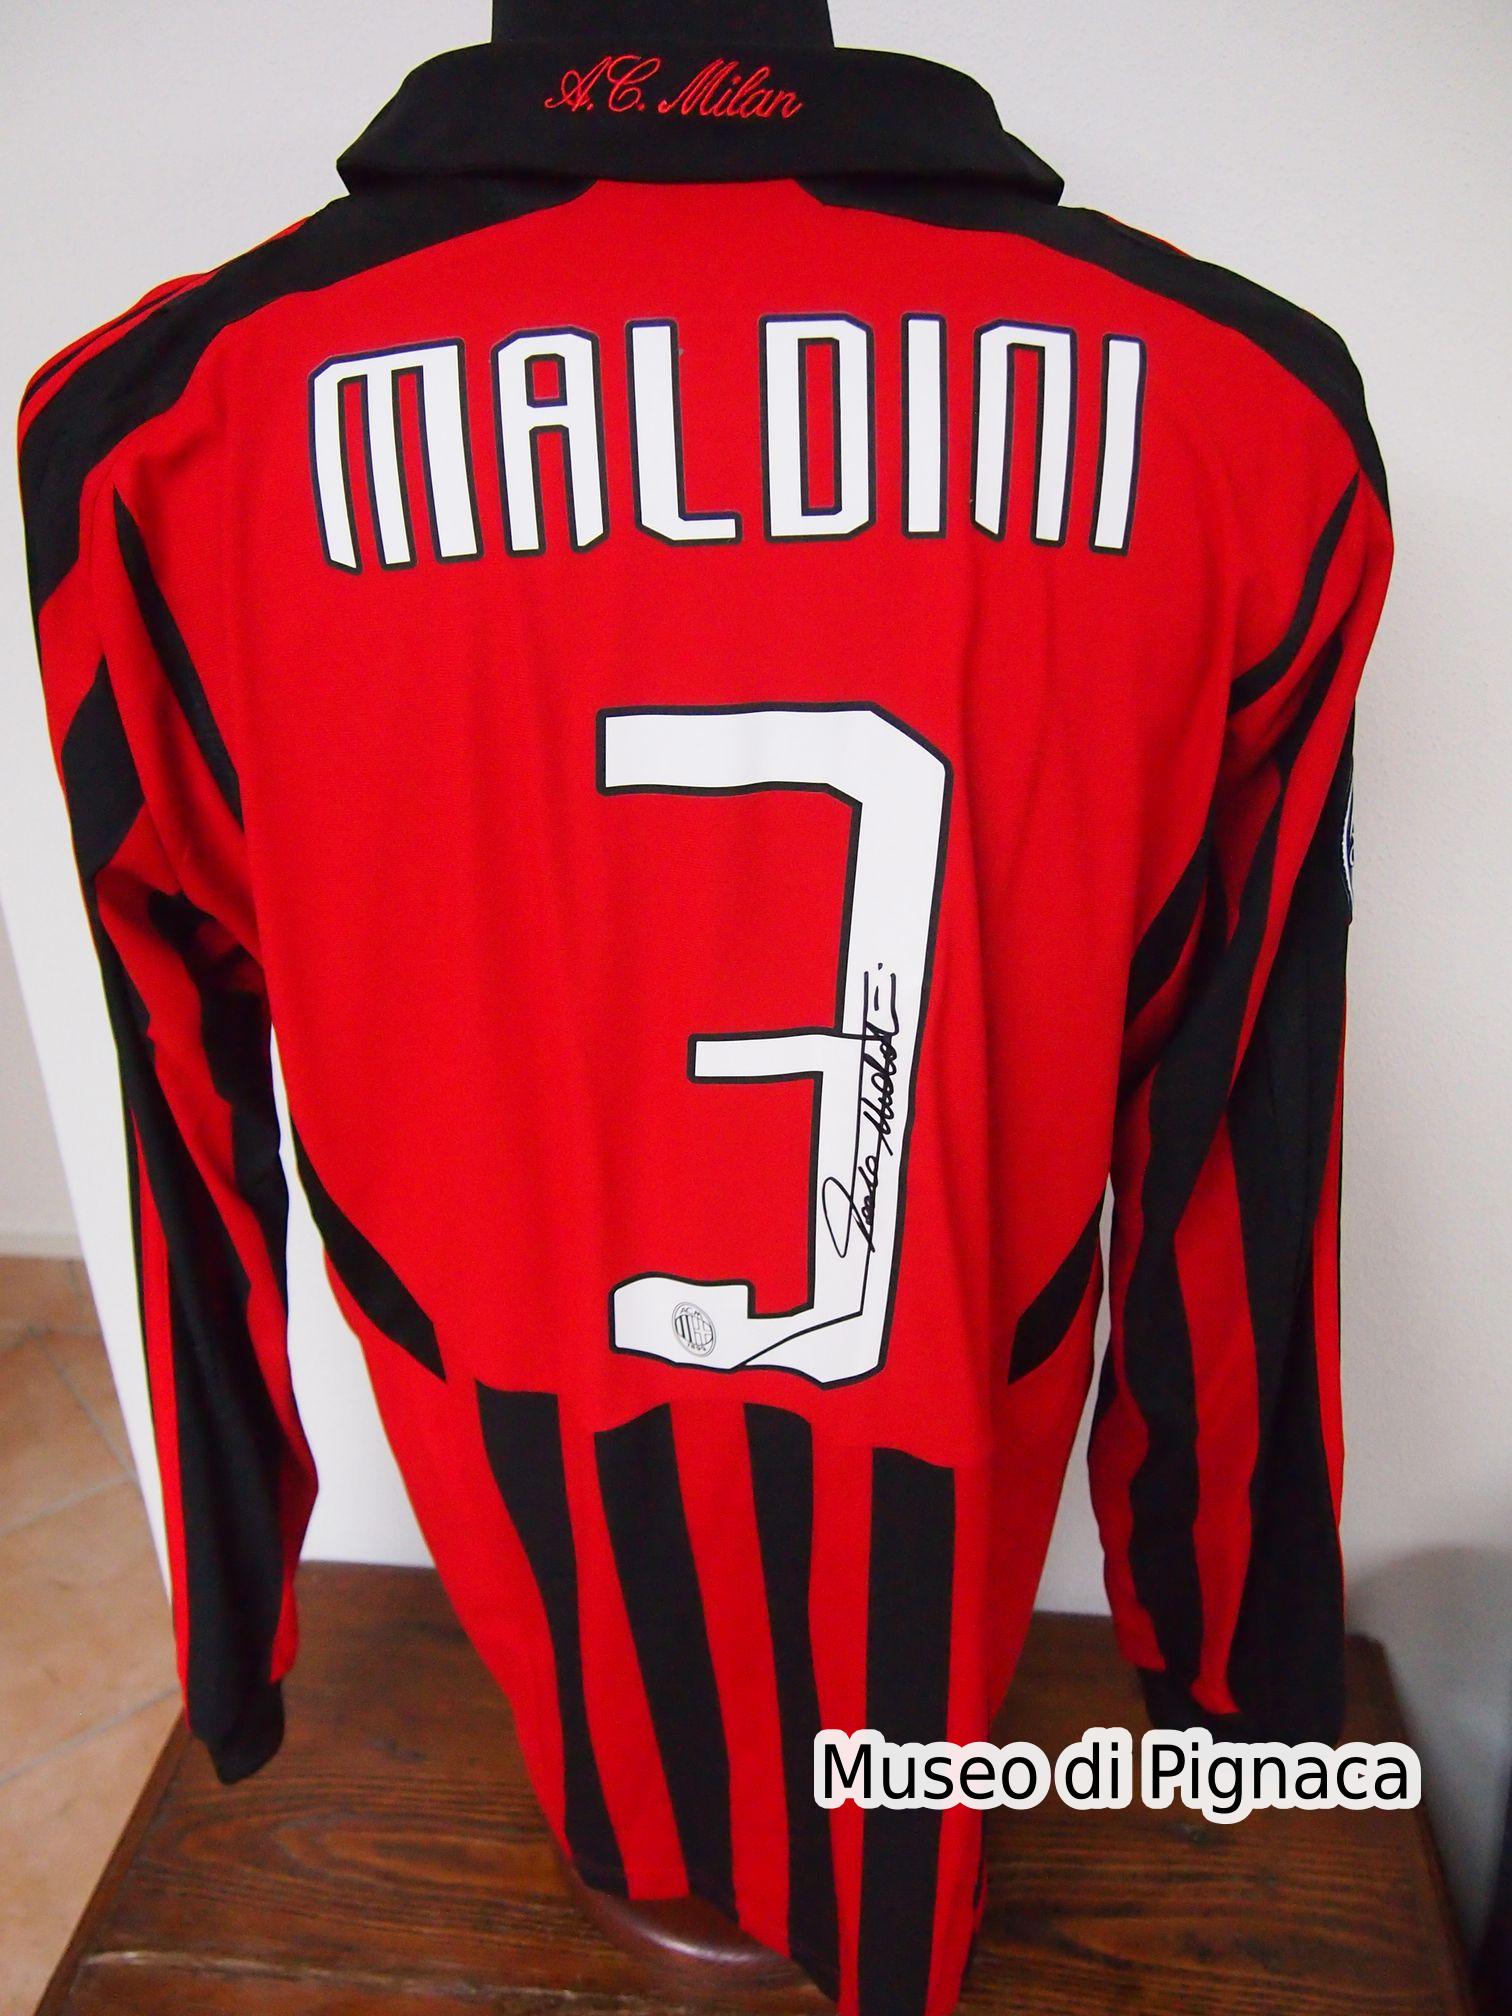 Paolo Maldini - Maglia Milan 2007-08 Retro (ex collezione)